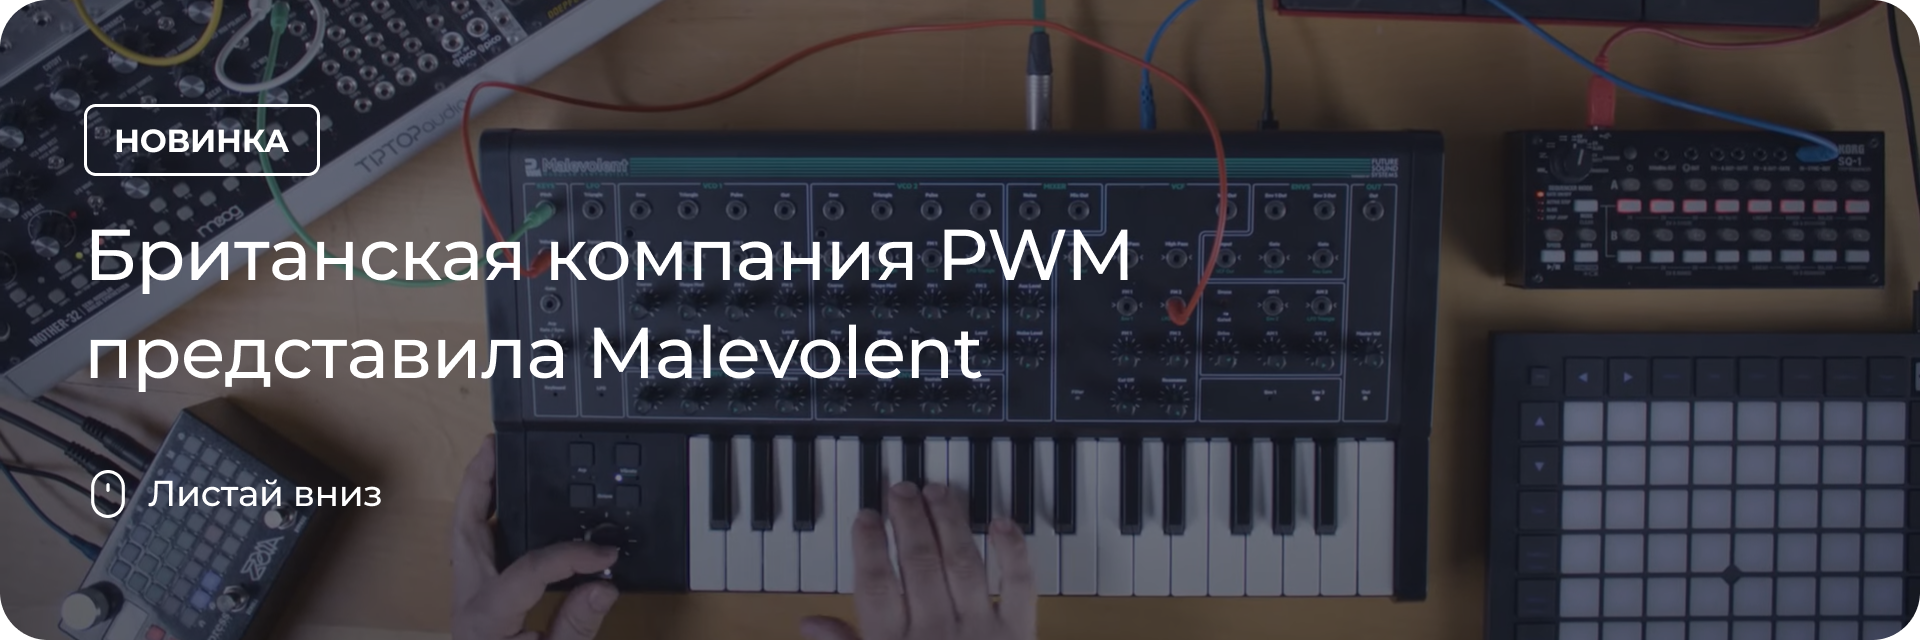 Компания PWM представила Malevolent